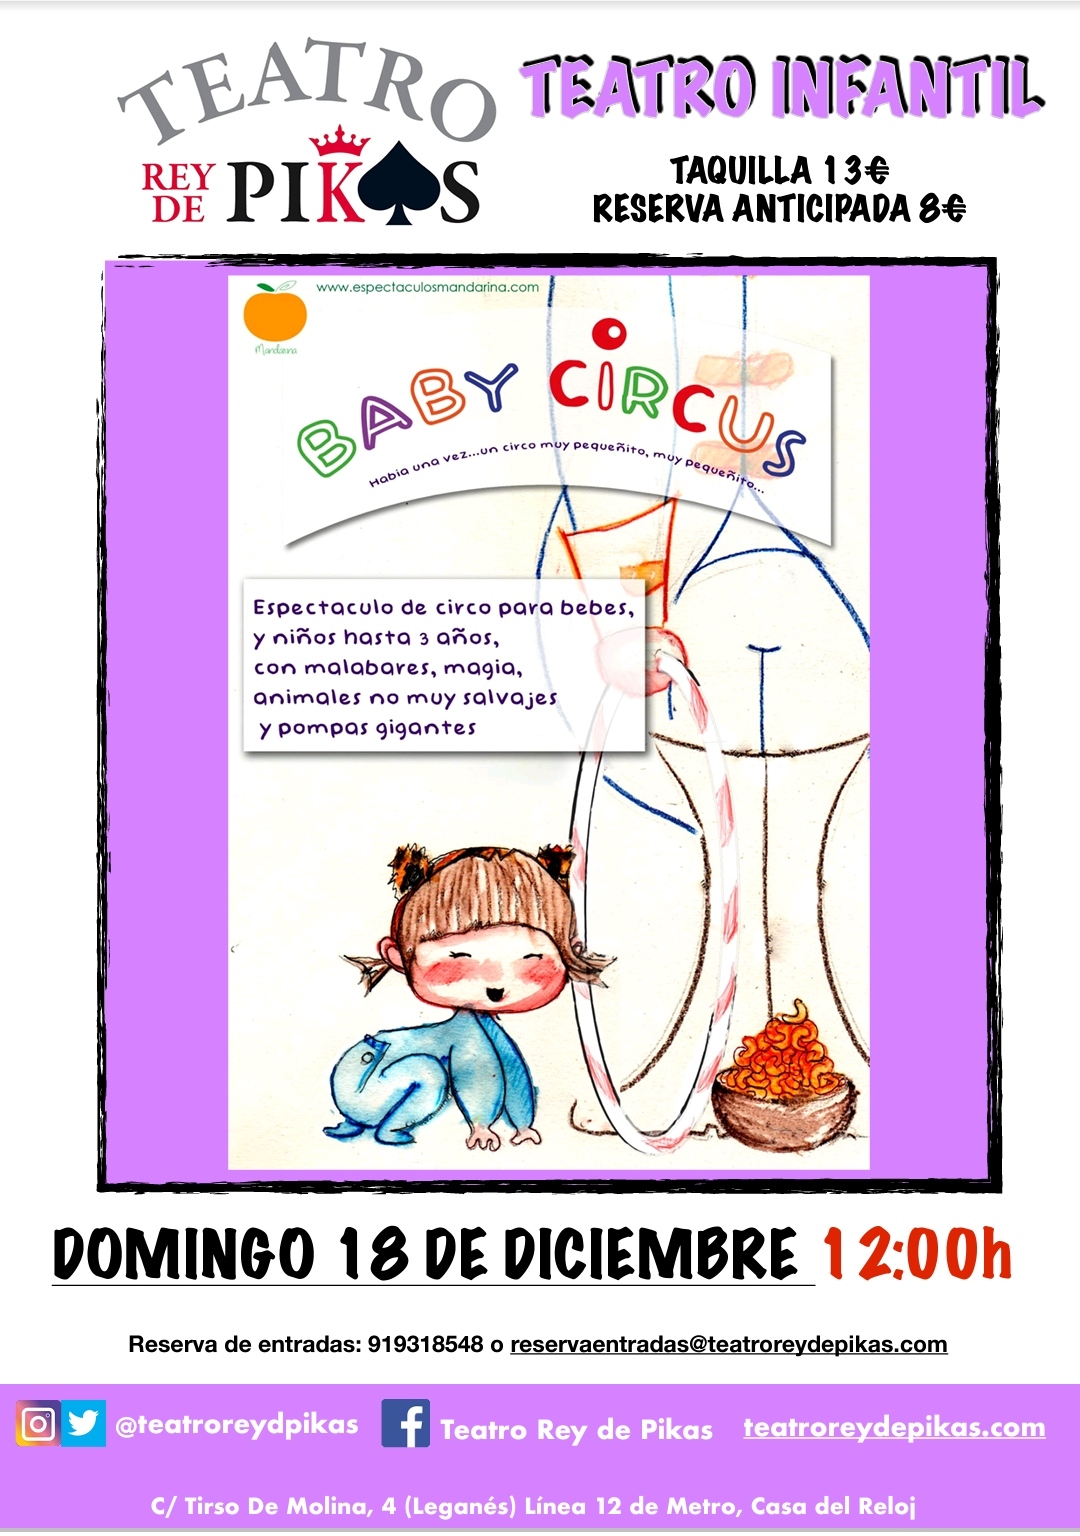 Teatro para bebés “Baby Circus” de Tina Mandarina